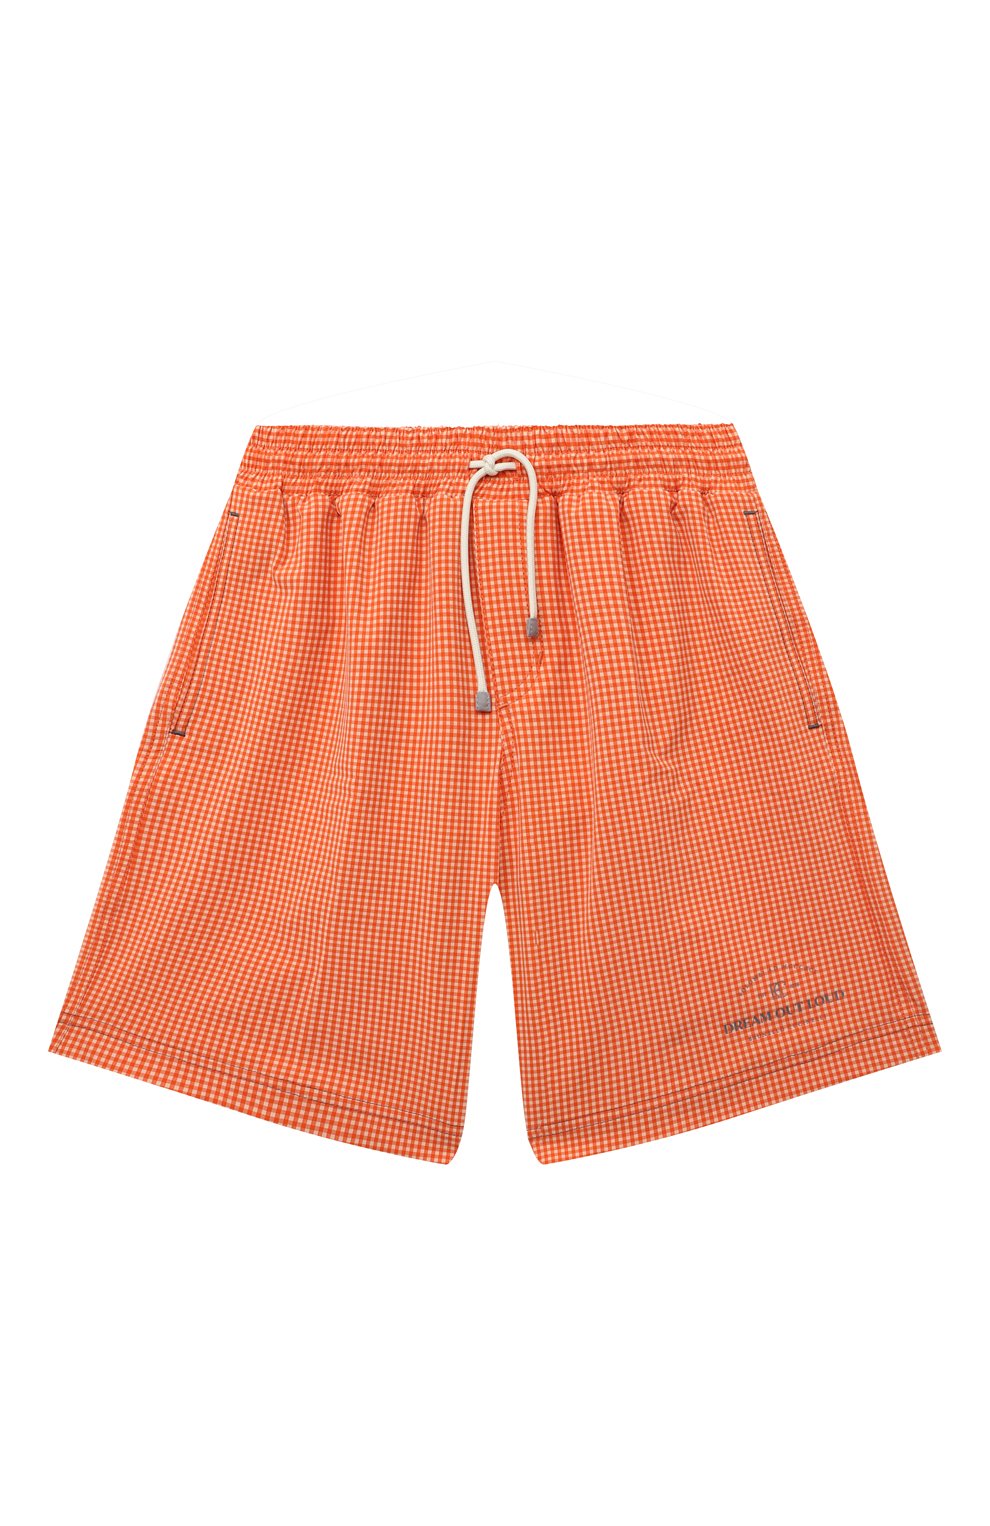 Детские плавки-шорты BRUNELLO CUCINELLI оранжевого цвета, арт. BM626H540A | Фото 1 (Материал внешний: Синтетический материал)